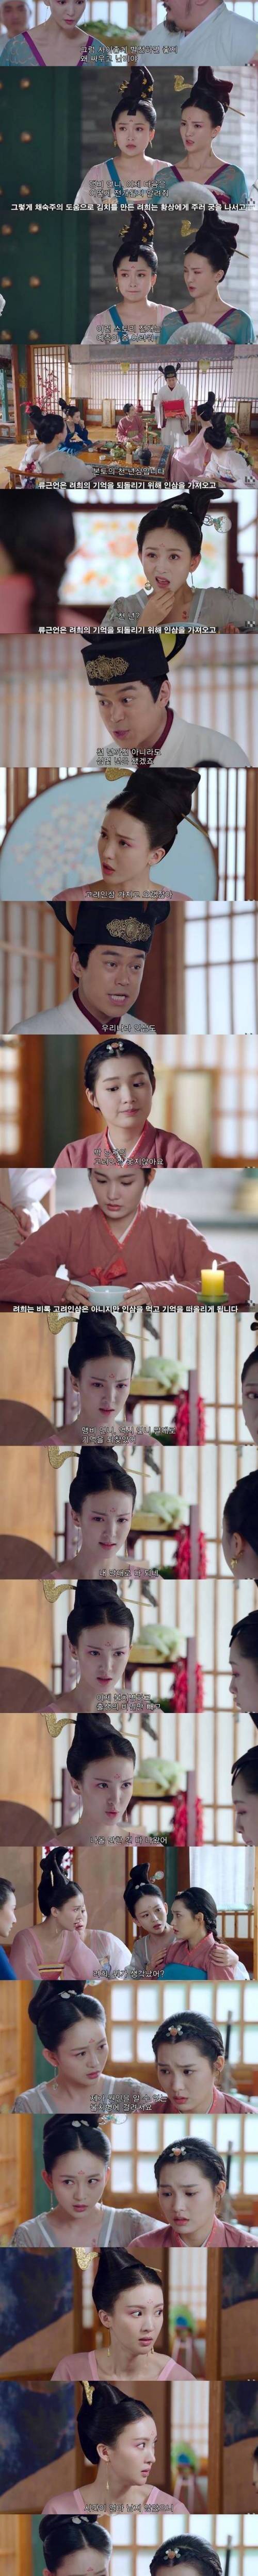 [스압] 중국 사극드라마의 고려인 에피소드